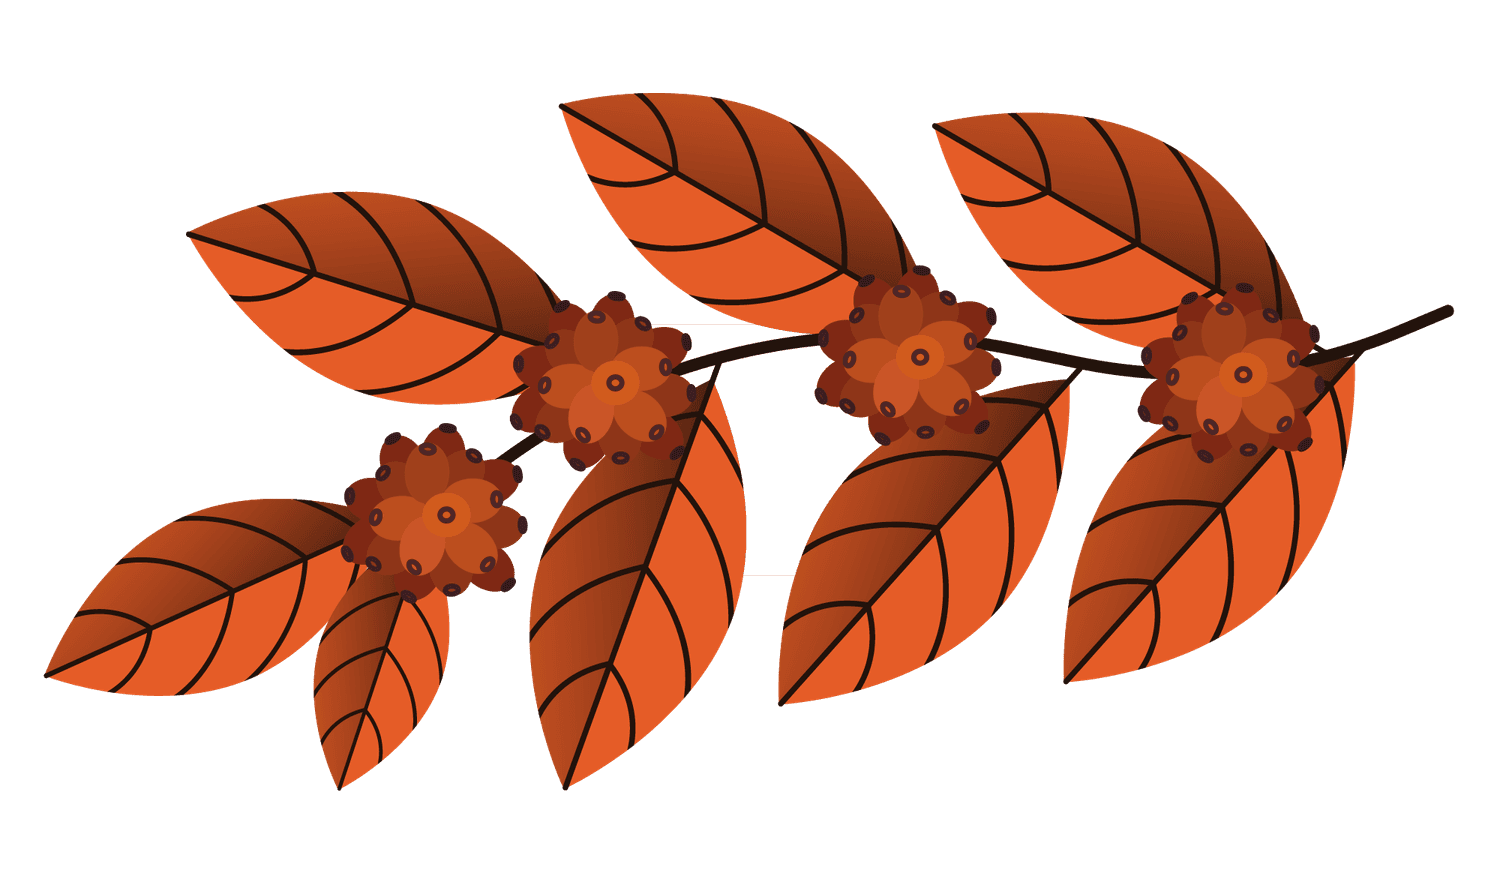 vibrant fall foliage autumn leaves illustration